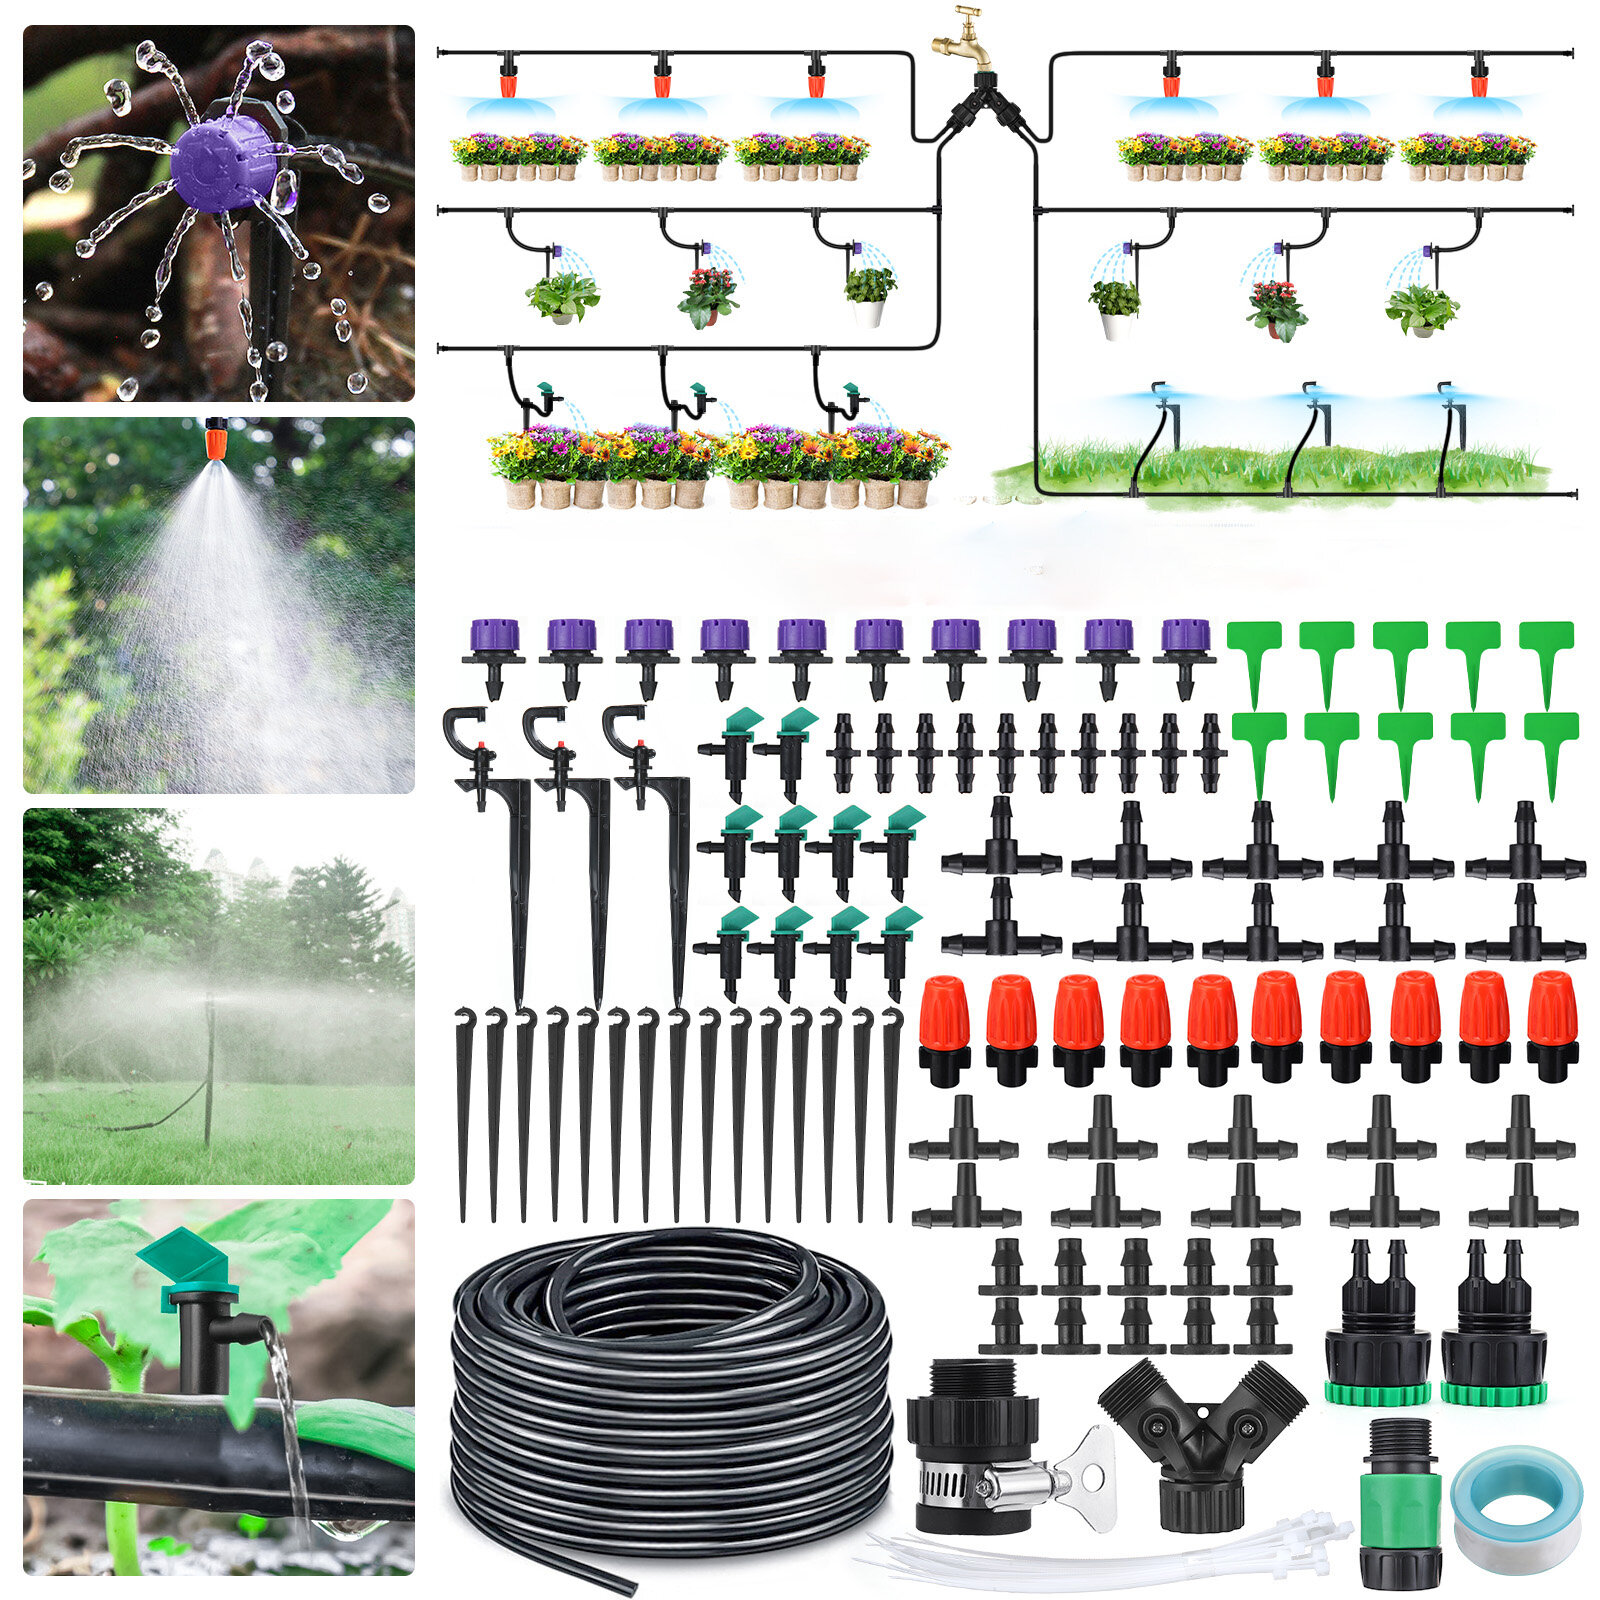 king do way Bewässerungssystem 20 Tropfdüsen Micro Bewässerungssystem Garten Topfpflanze Tropf Bewässerung Sprinkler mit 18m Tropfschlauch Bewässerungsset für Blumen Pflanzen 18m Set